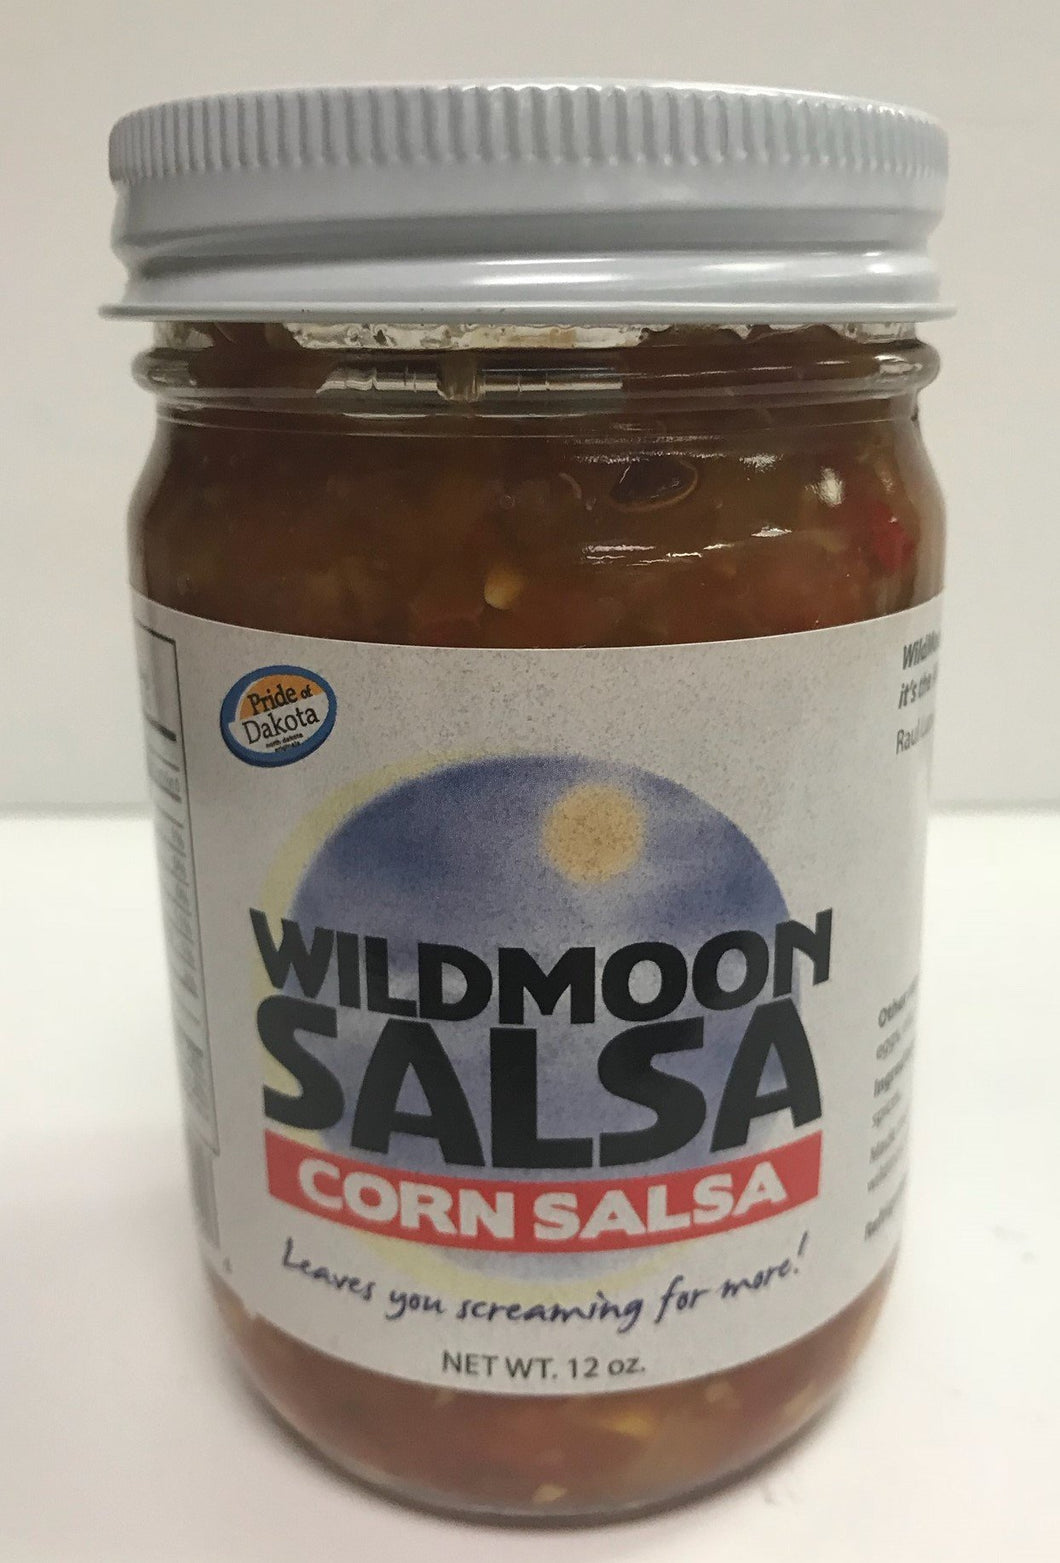 Wild Moon Corn Salsa